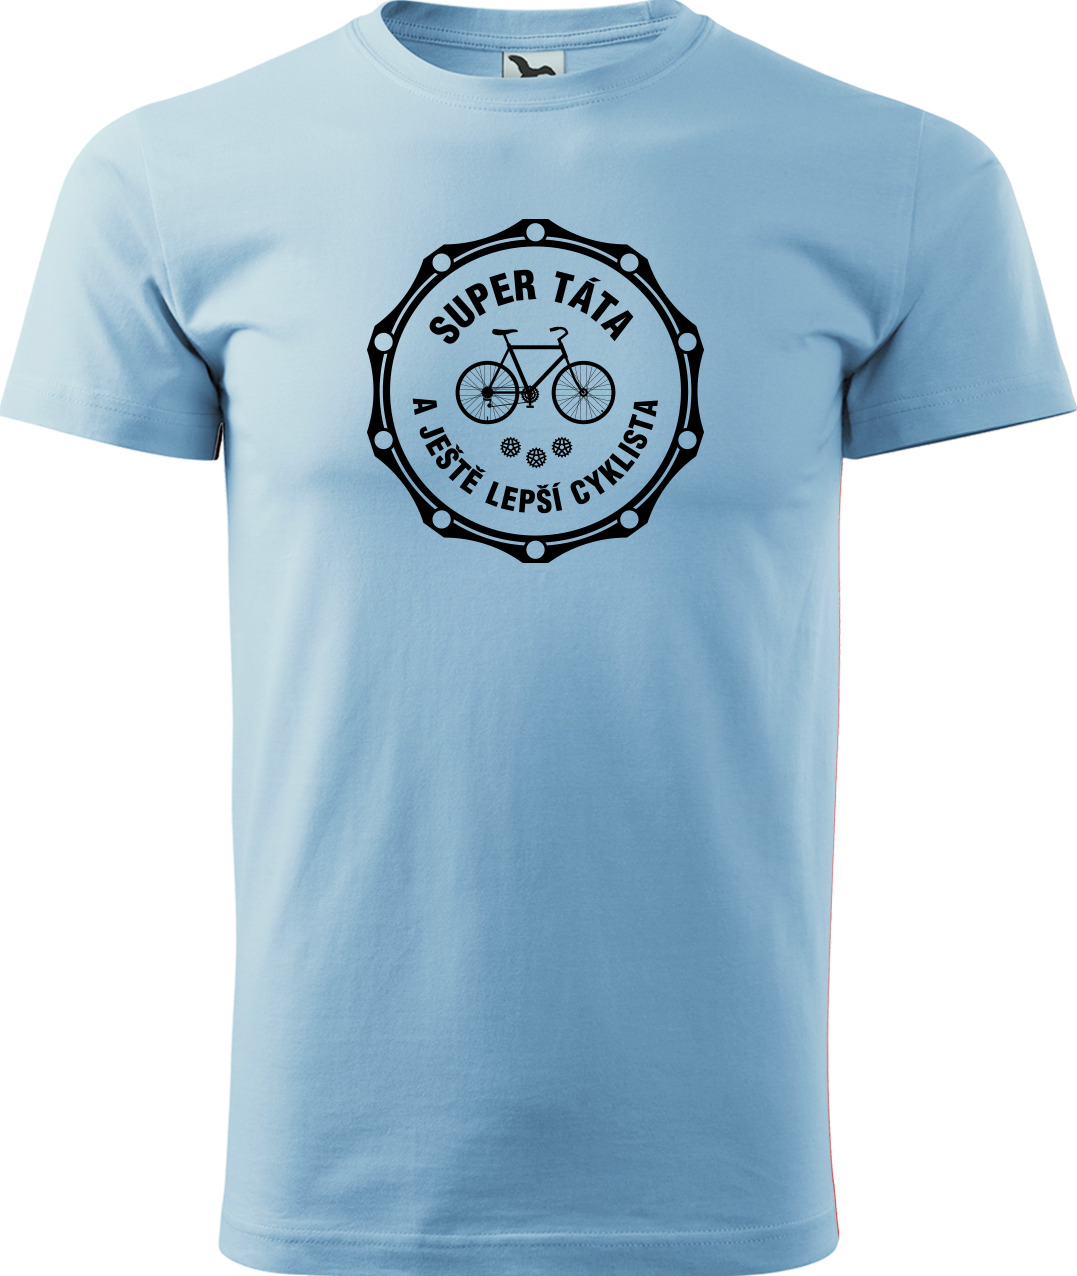 Pánské tričko pro cyklistu - Super táta a ještě lepší cyklista Velikost: XL, Barva: Nebesky modrá (15)